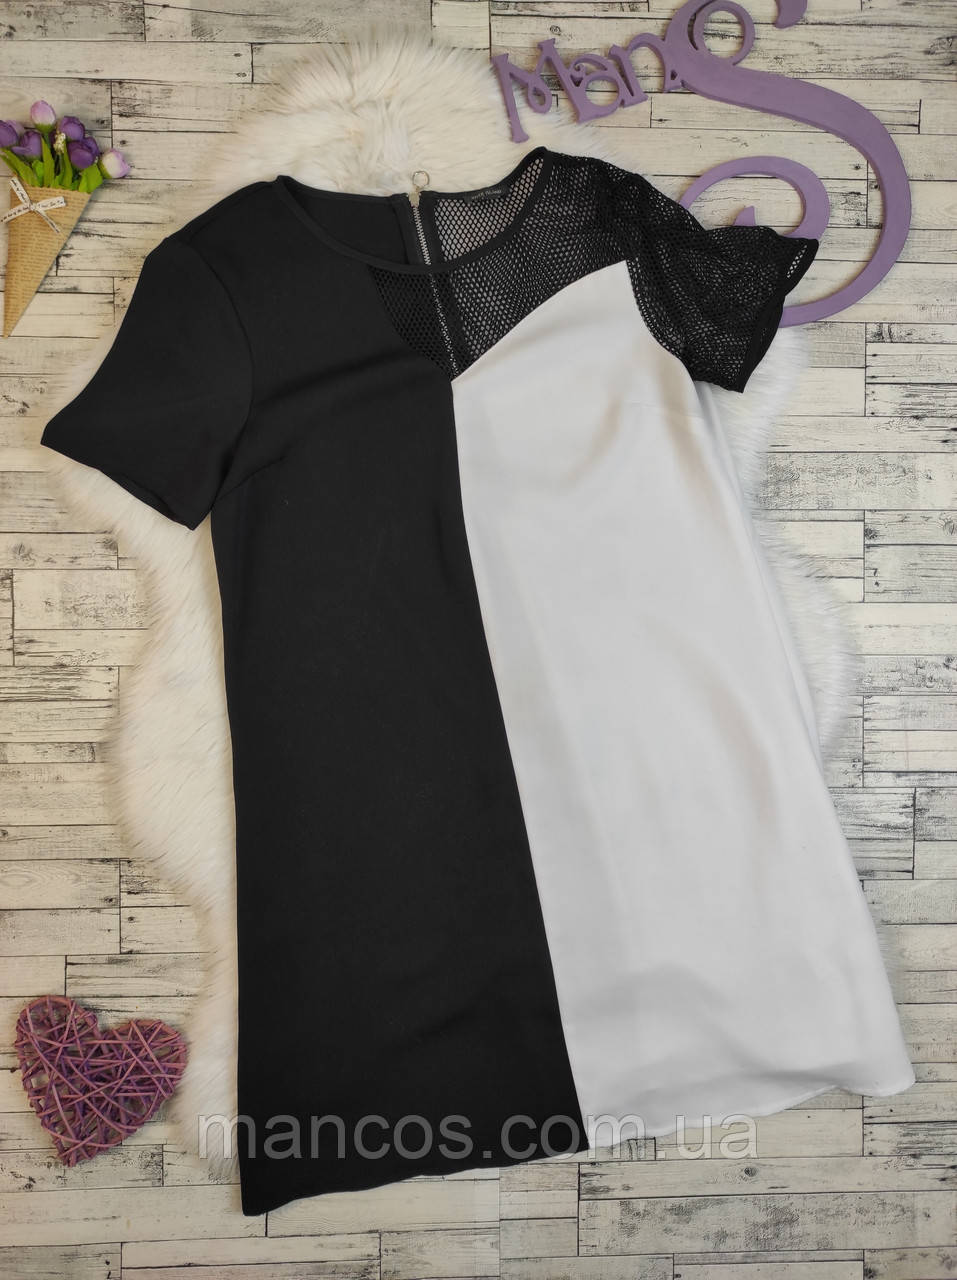 Жіноча сукня River Island чорно-біла з коротким рукавом подвійна Розмір 46 М